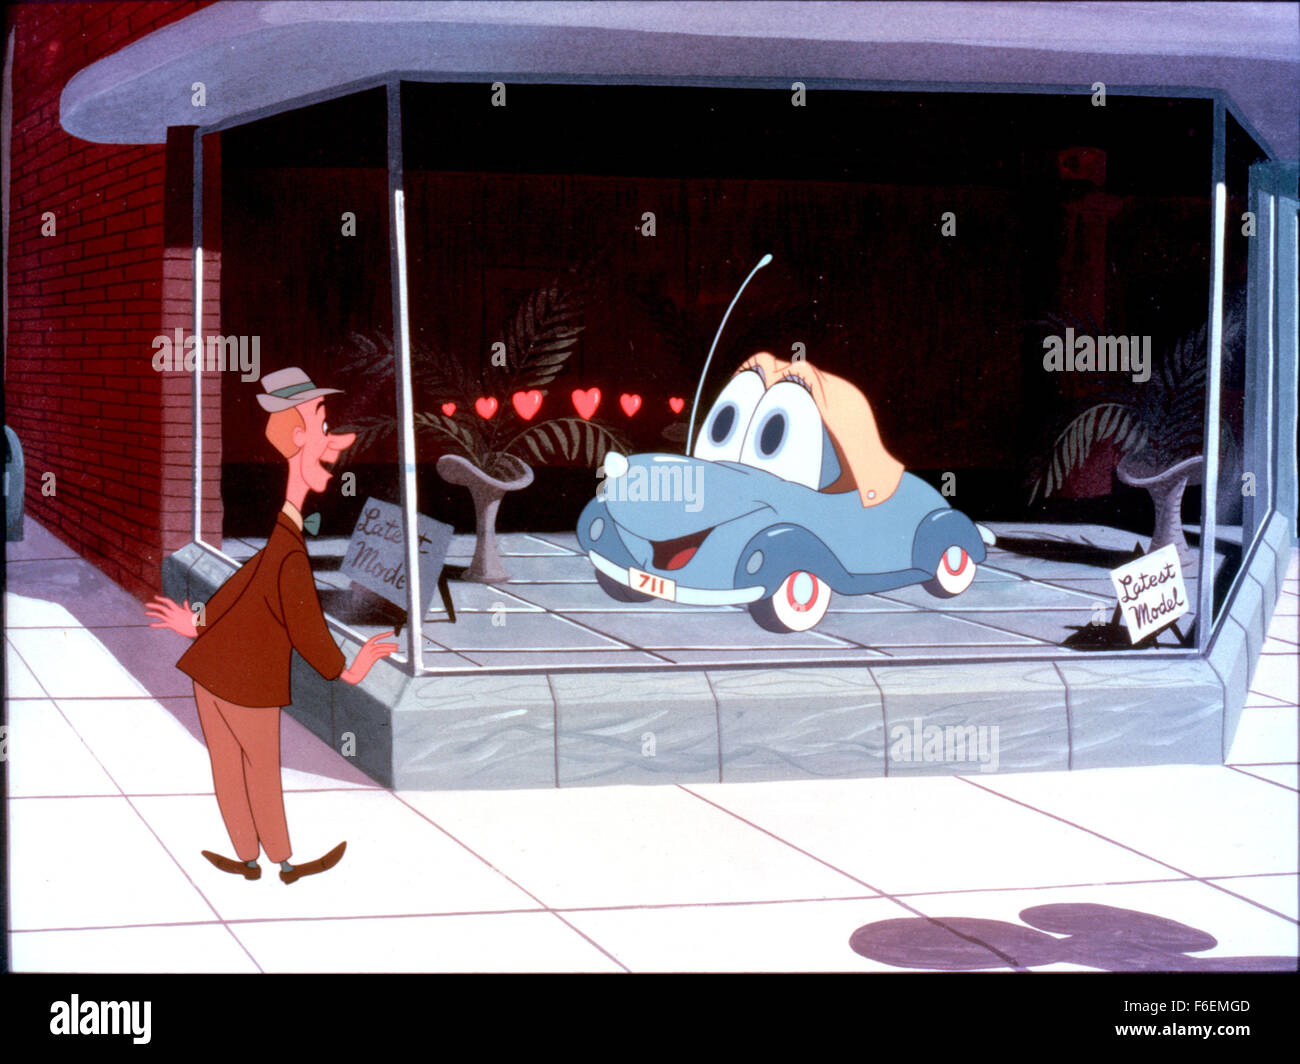 24 déc., 1968 ; San Francisco, CA, USA ; Scène de la famille aventure/comédie 'bug' l'amour réalisé par Robert Stevenson. Banque D'Images